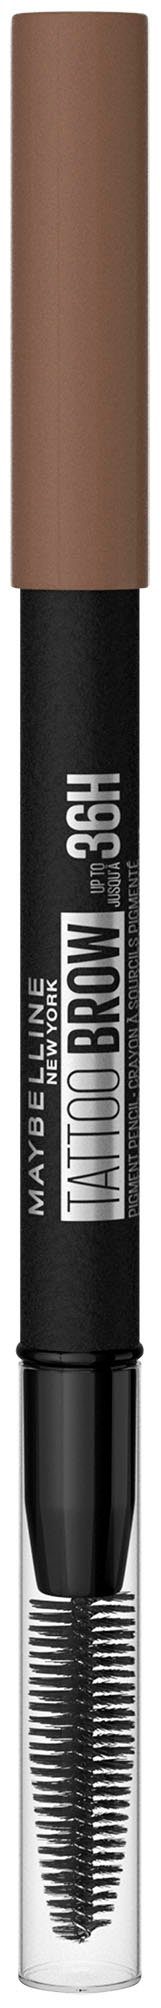 MAYBELLINE NEW YORK Augenbrauen-Stift Tattoo Bürste, mit Formel, Brown wasserfeste 6 Augen-Make-Up Ash Brow 36H